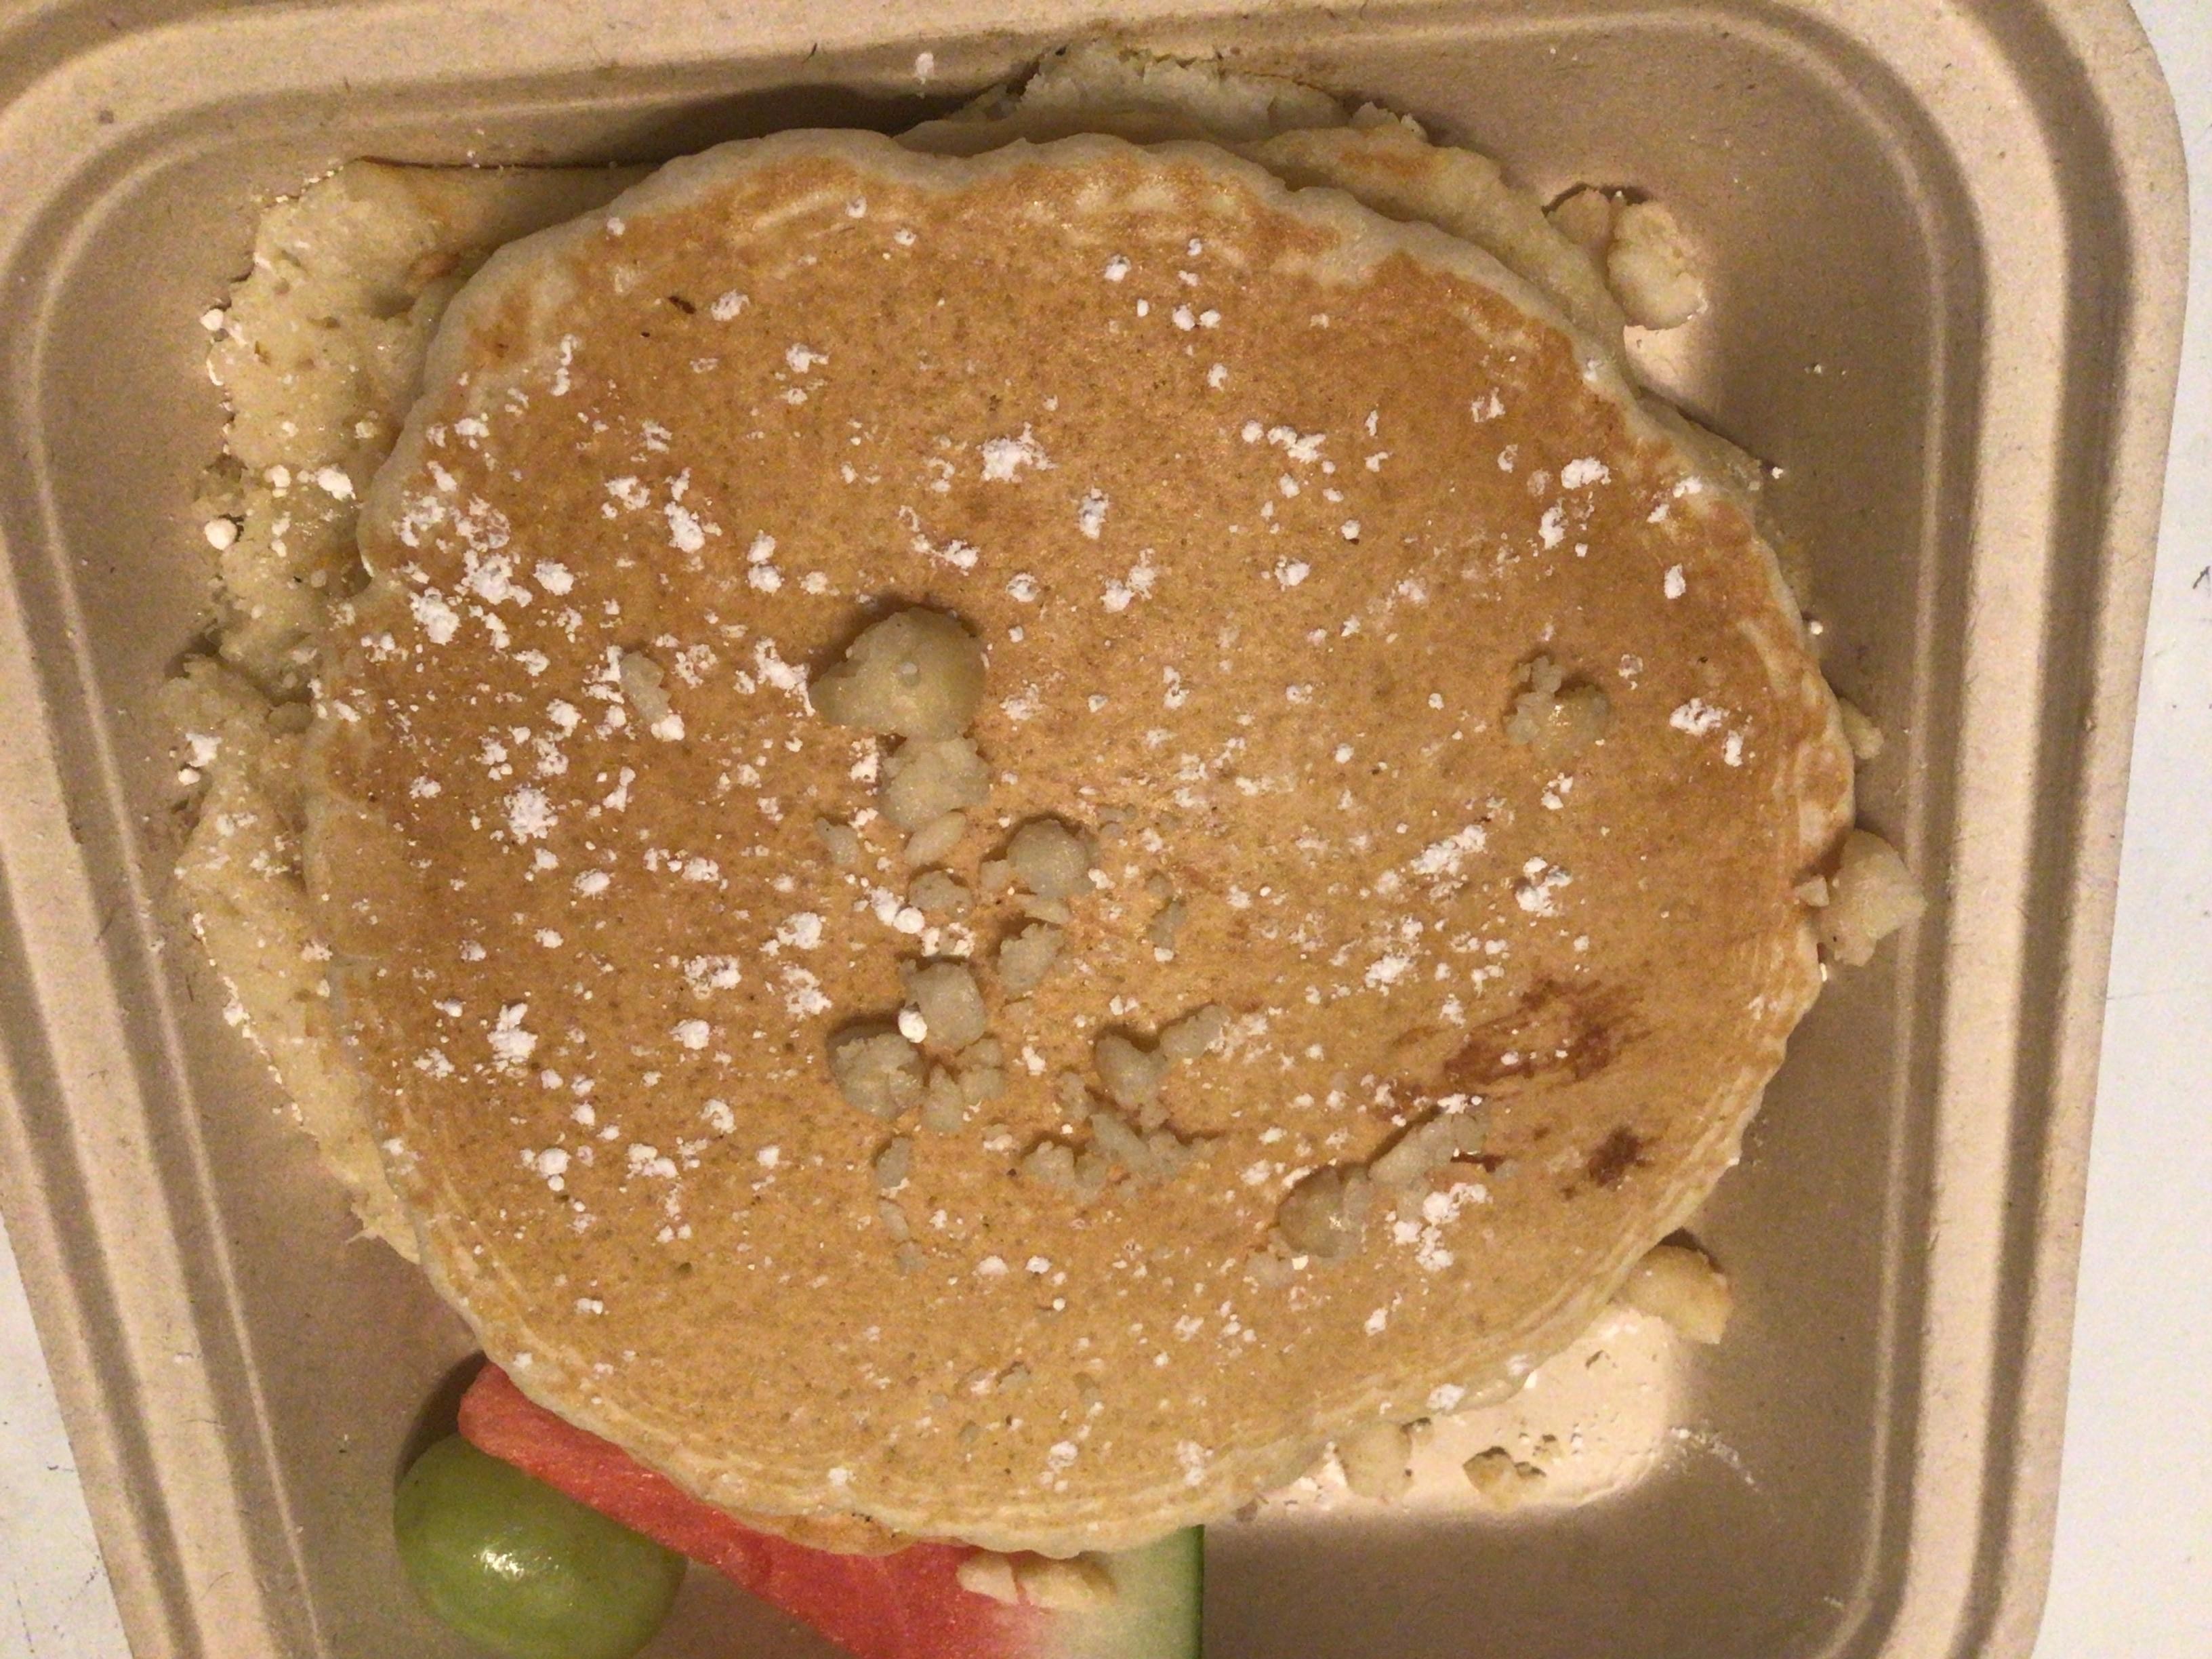 Macadamia Nut Pancakes